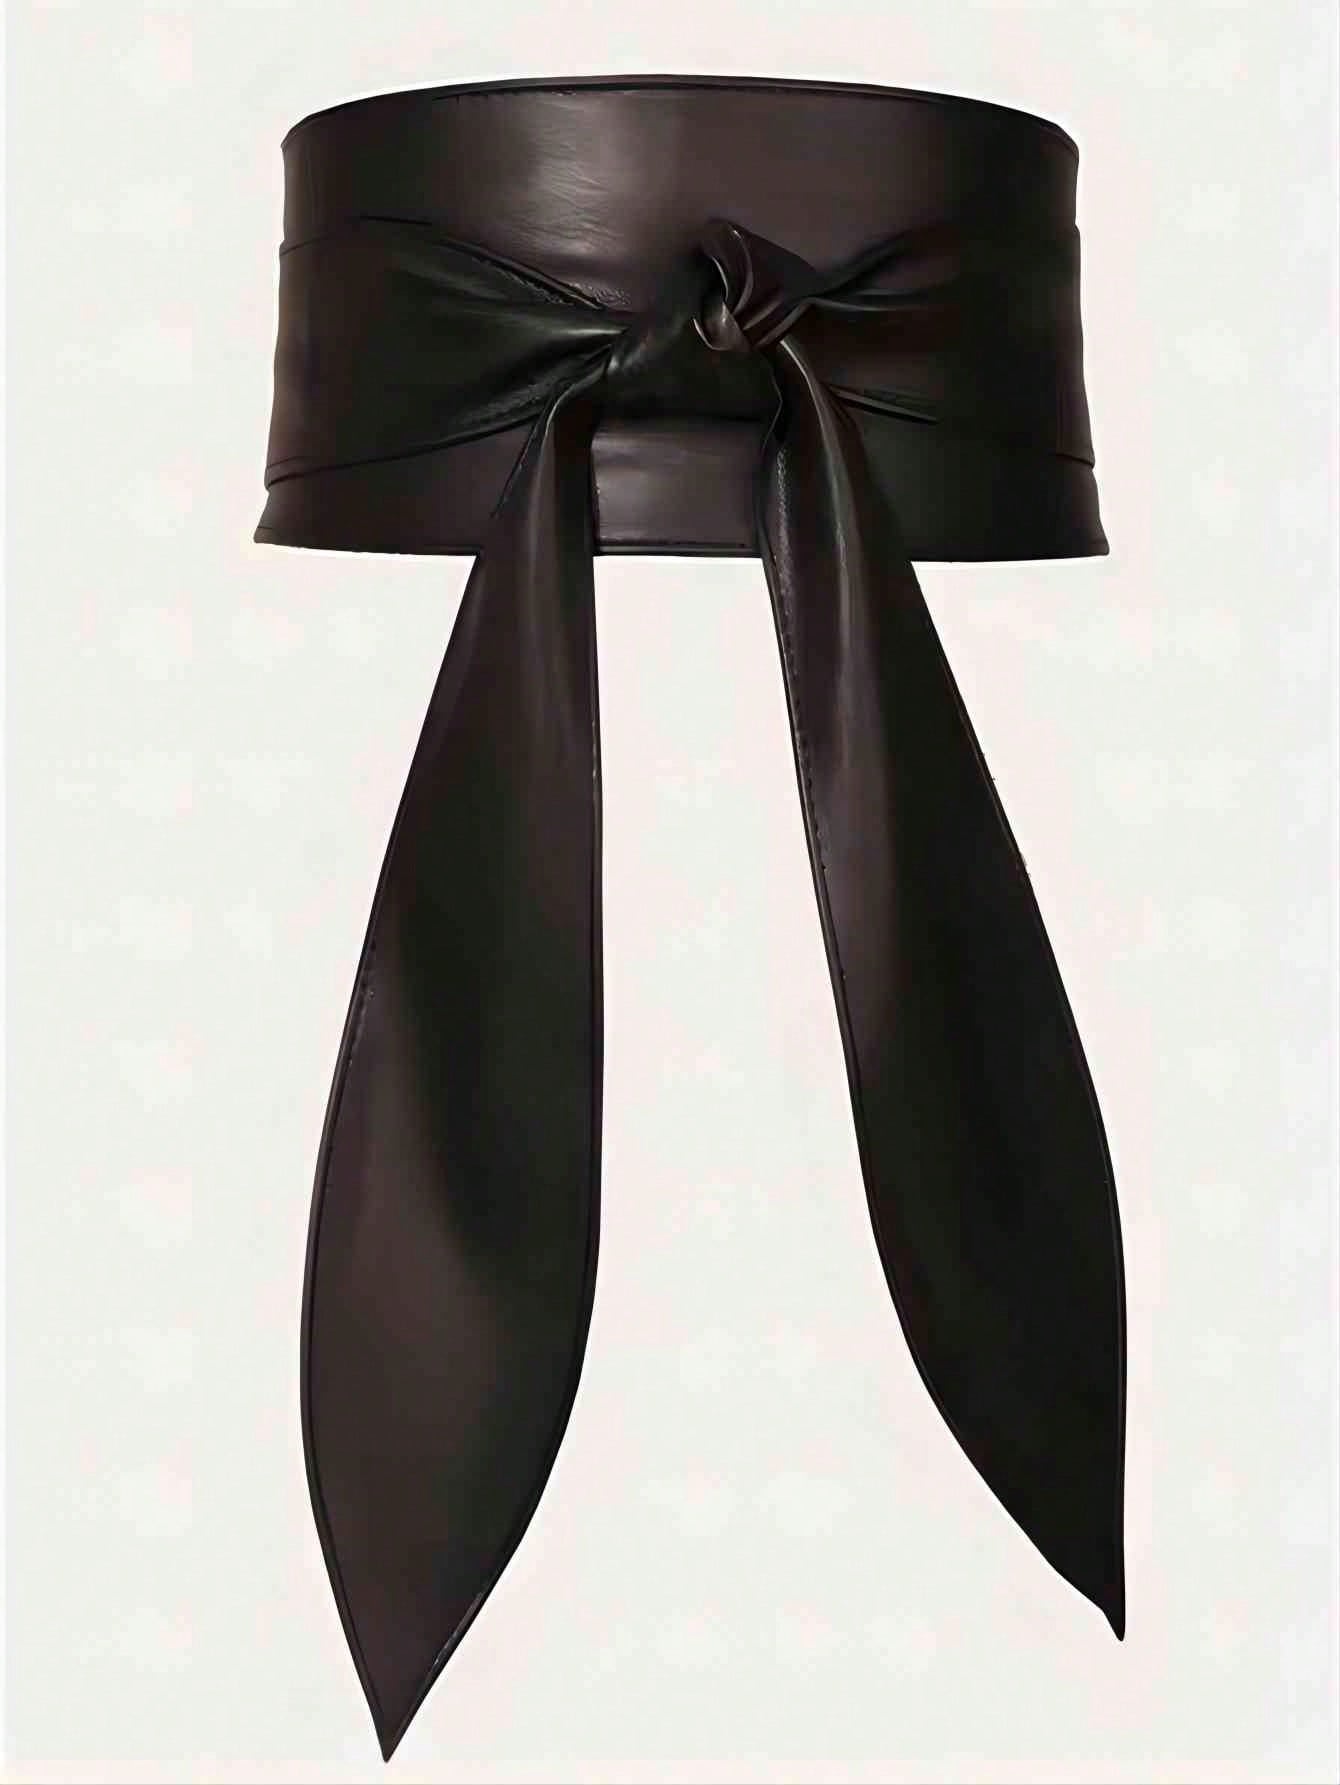 1шт женский винтажный пояс с бантом, регулируемый широкий пояс для платья, черный женский пояс из натуральной кожи широкий пояс с бантом корсетный пояс для платья